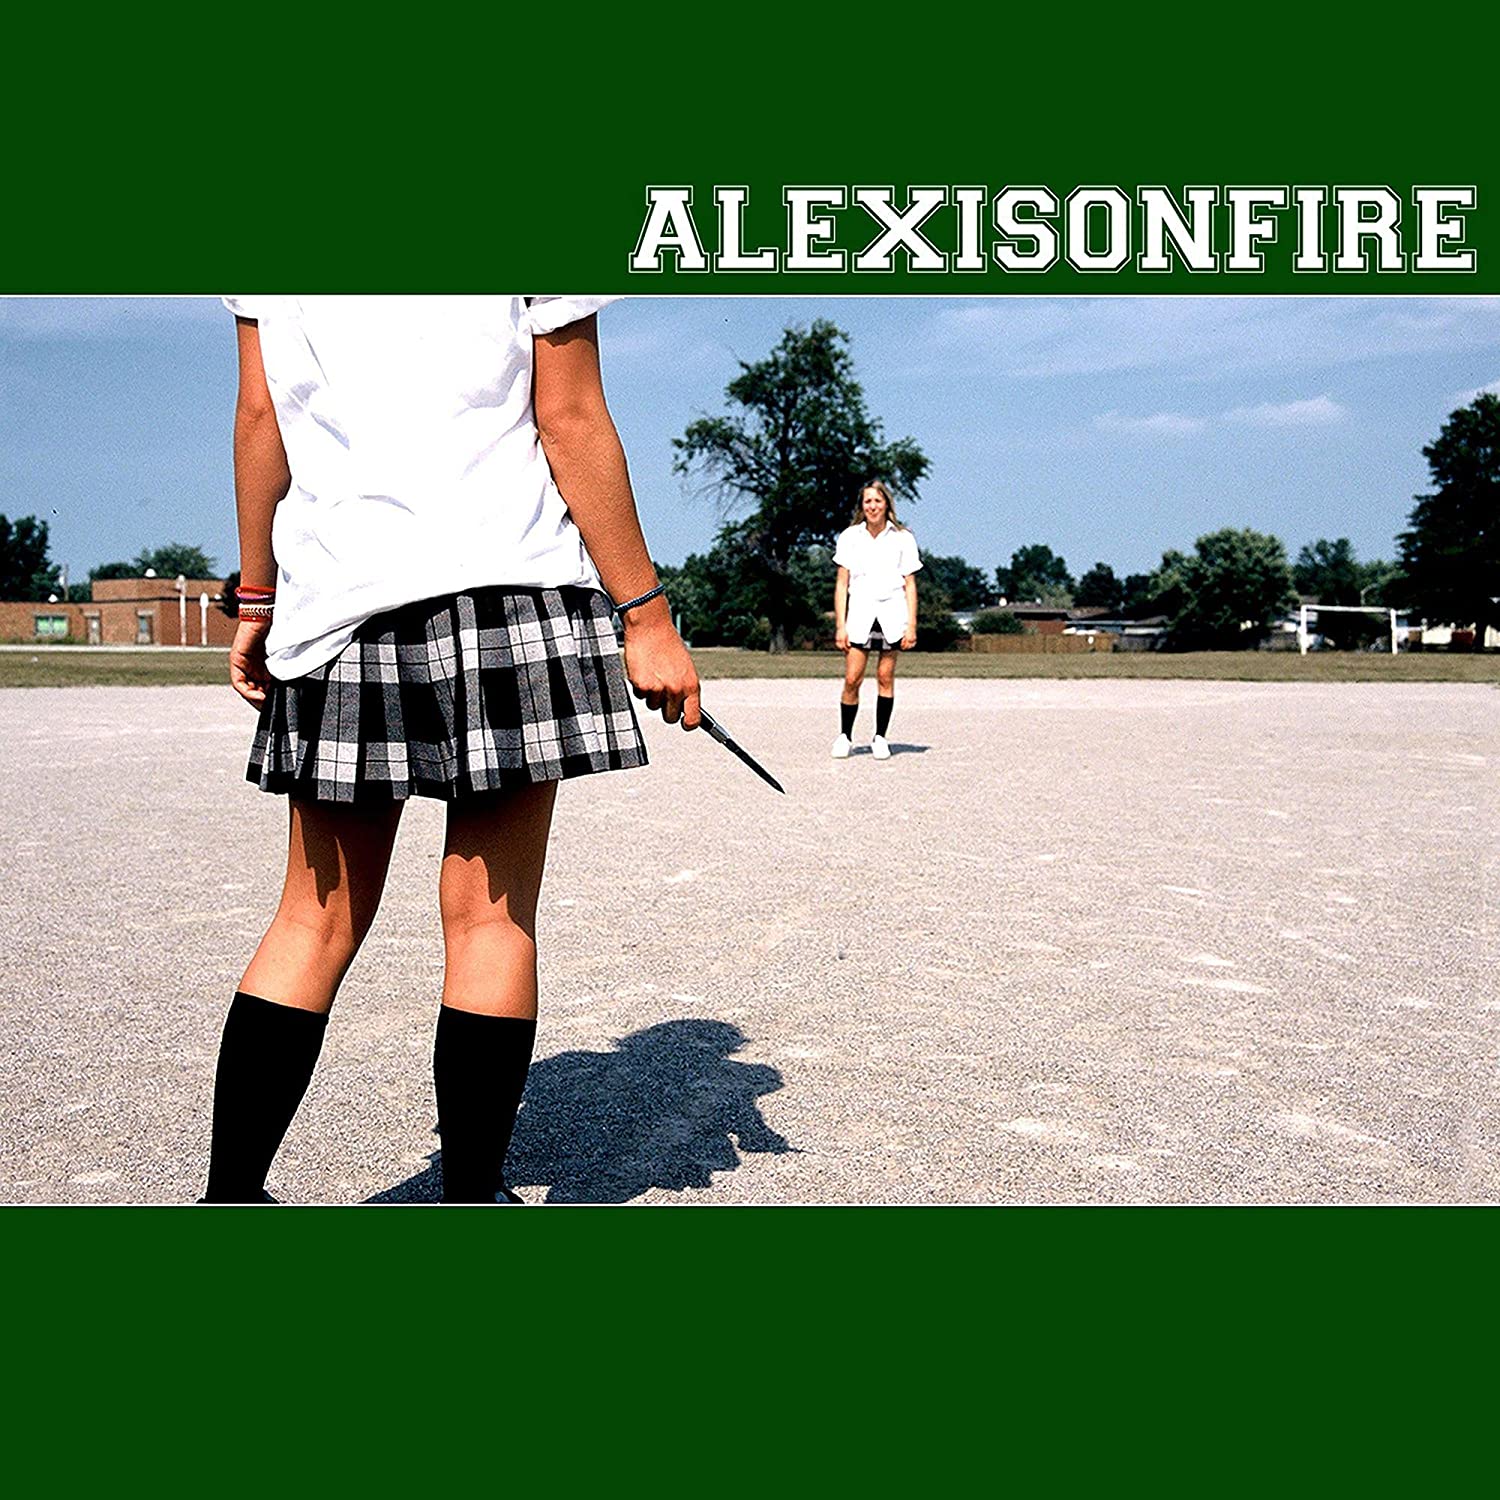 ALEXISONFIRE "Alexisonfire" 2xLP